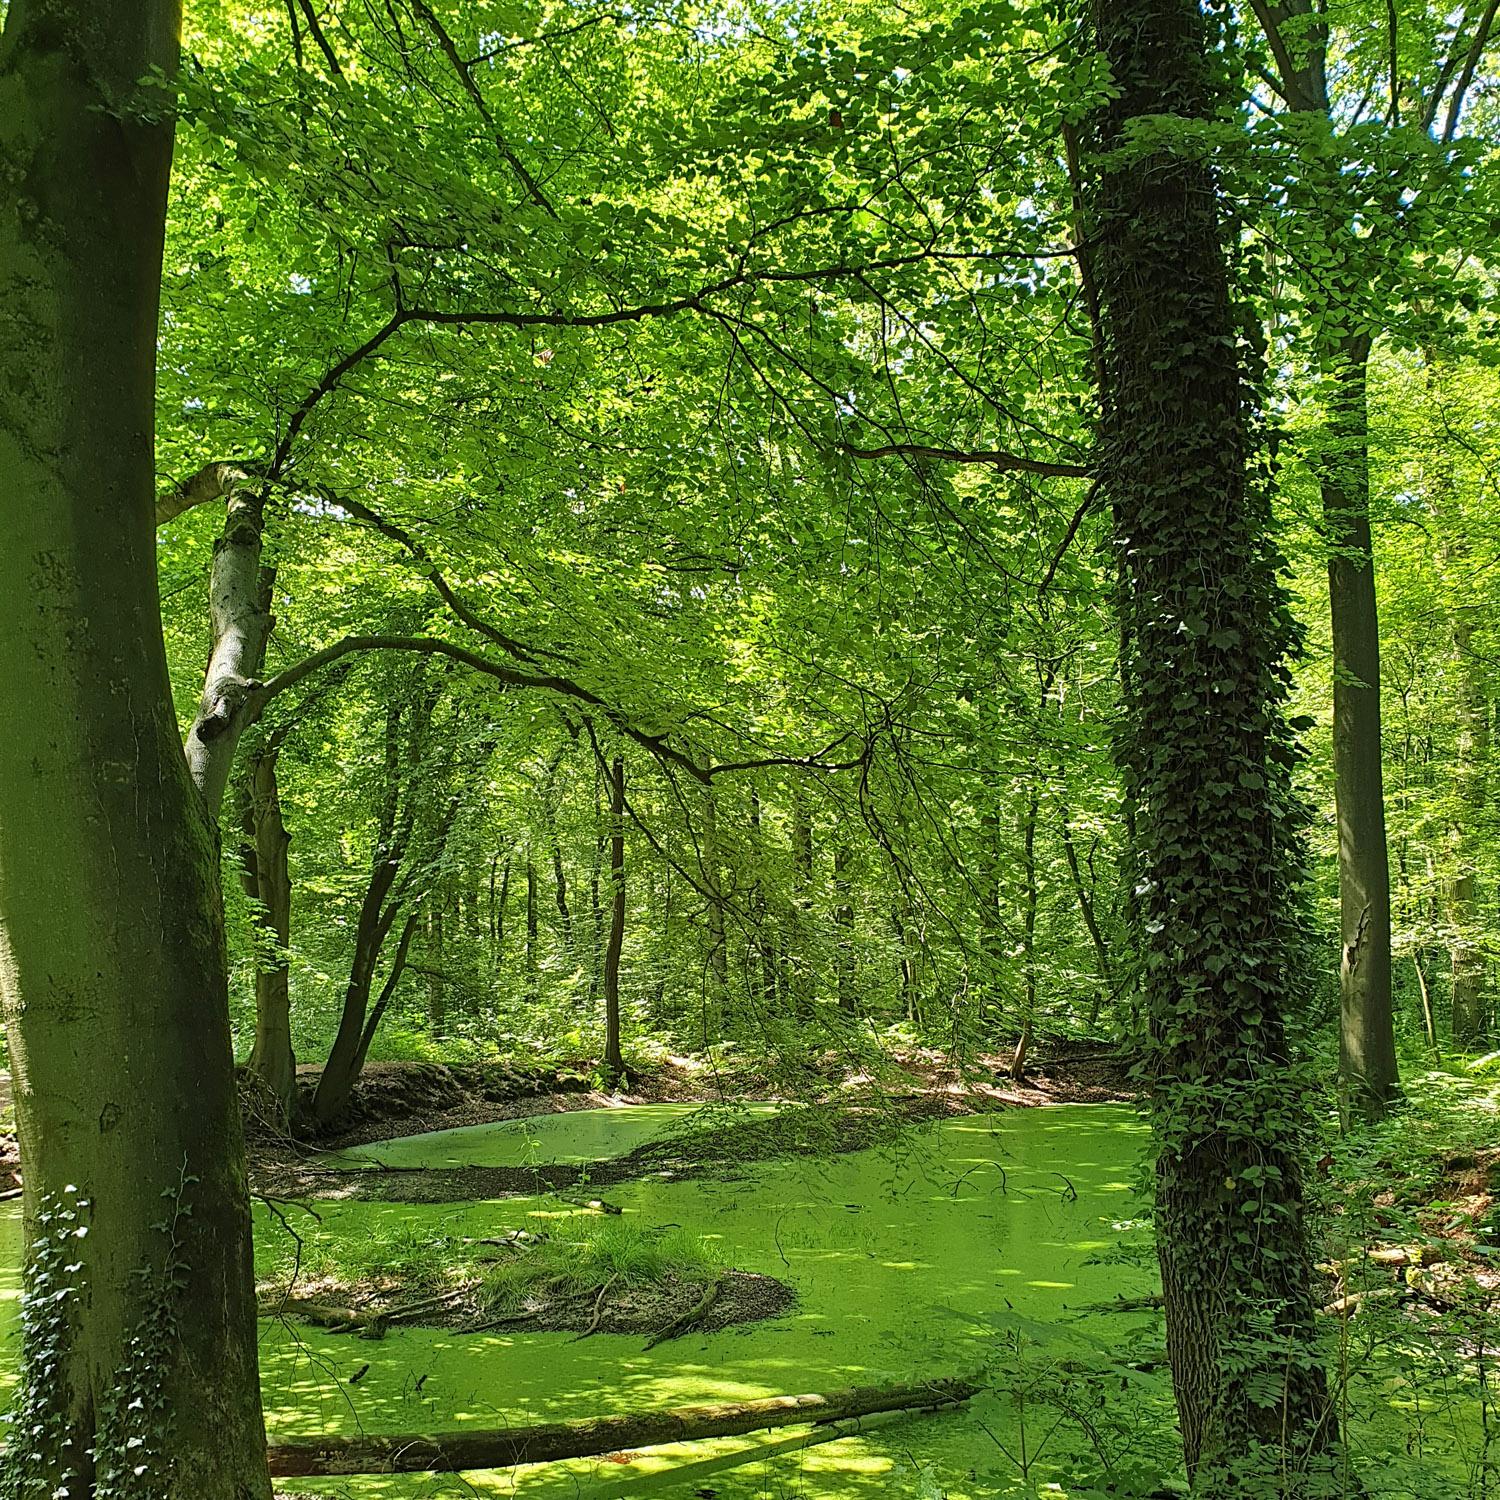 Einer der letzten Urwälder Deutschlands, der der Wirtschaftlichkeit weitgehend entkommen konnte (Foto: Markus Terbach)